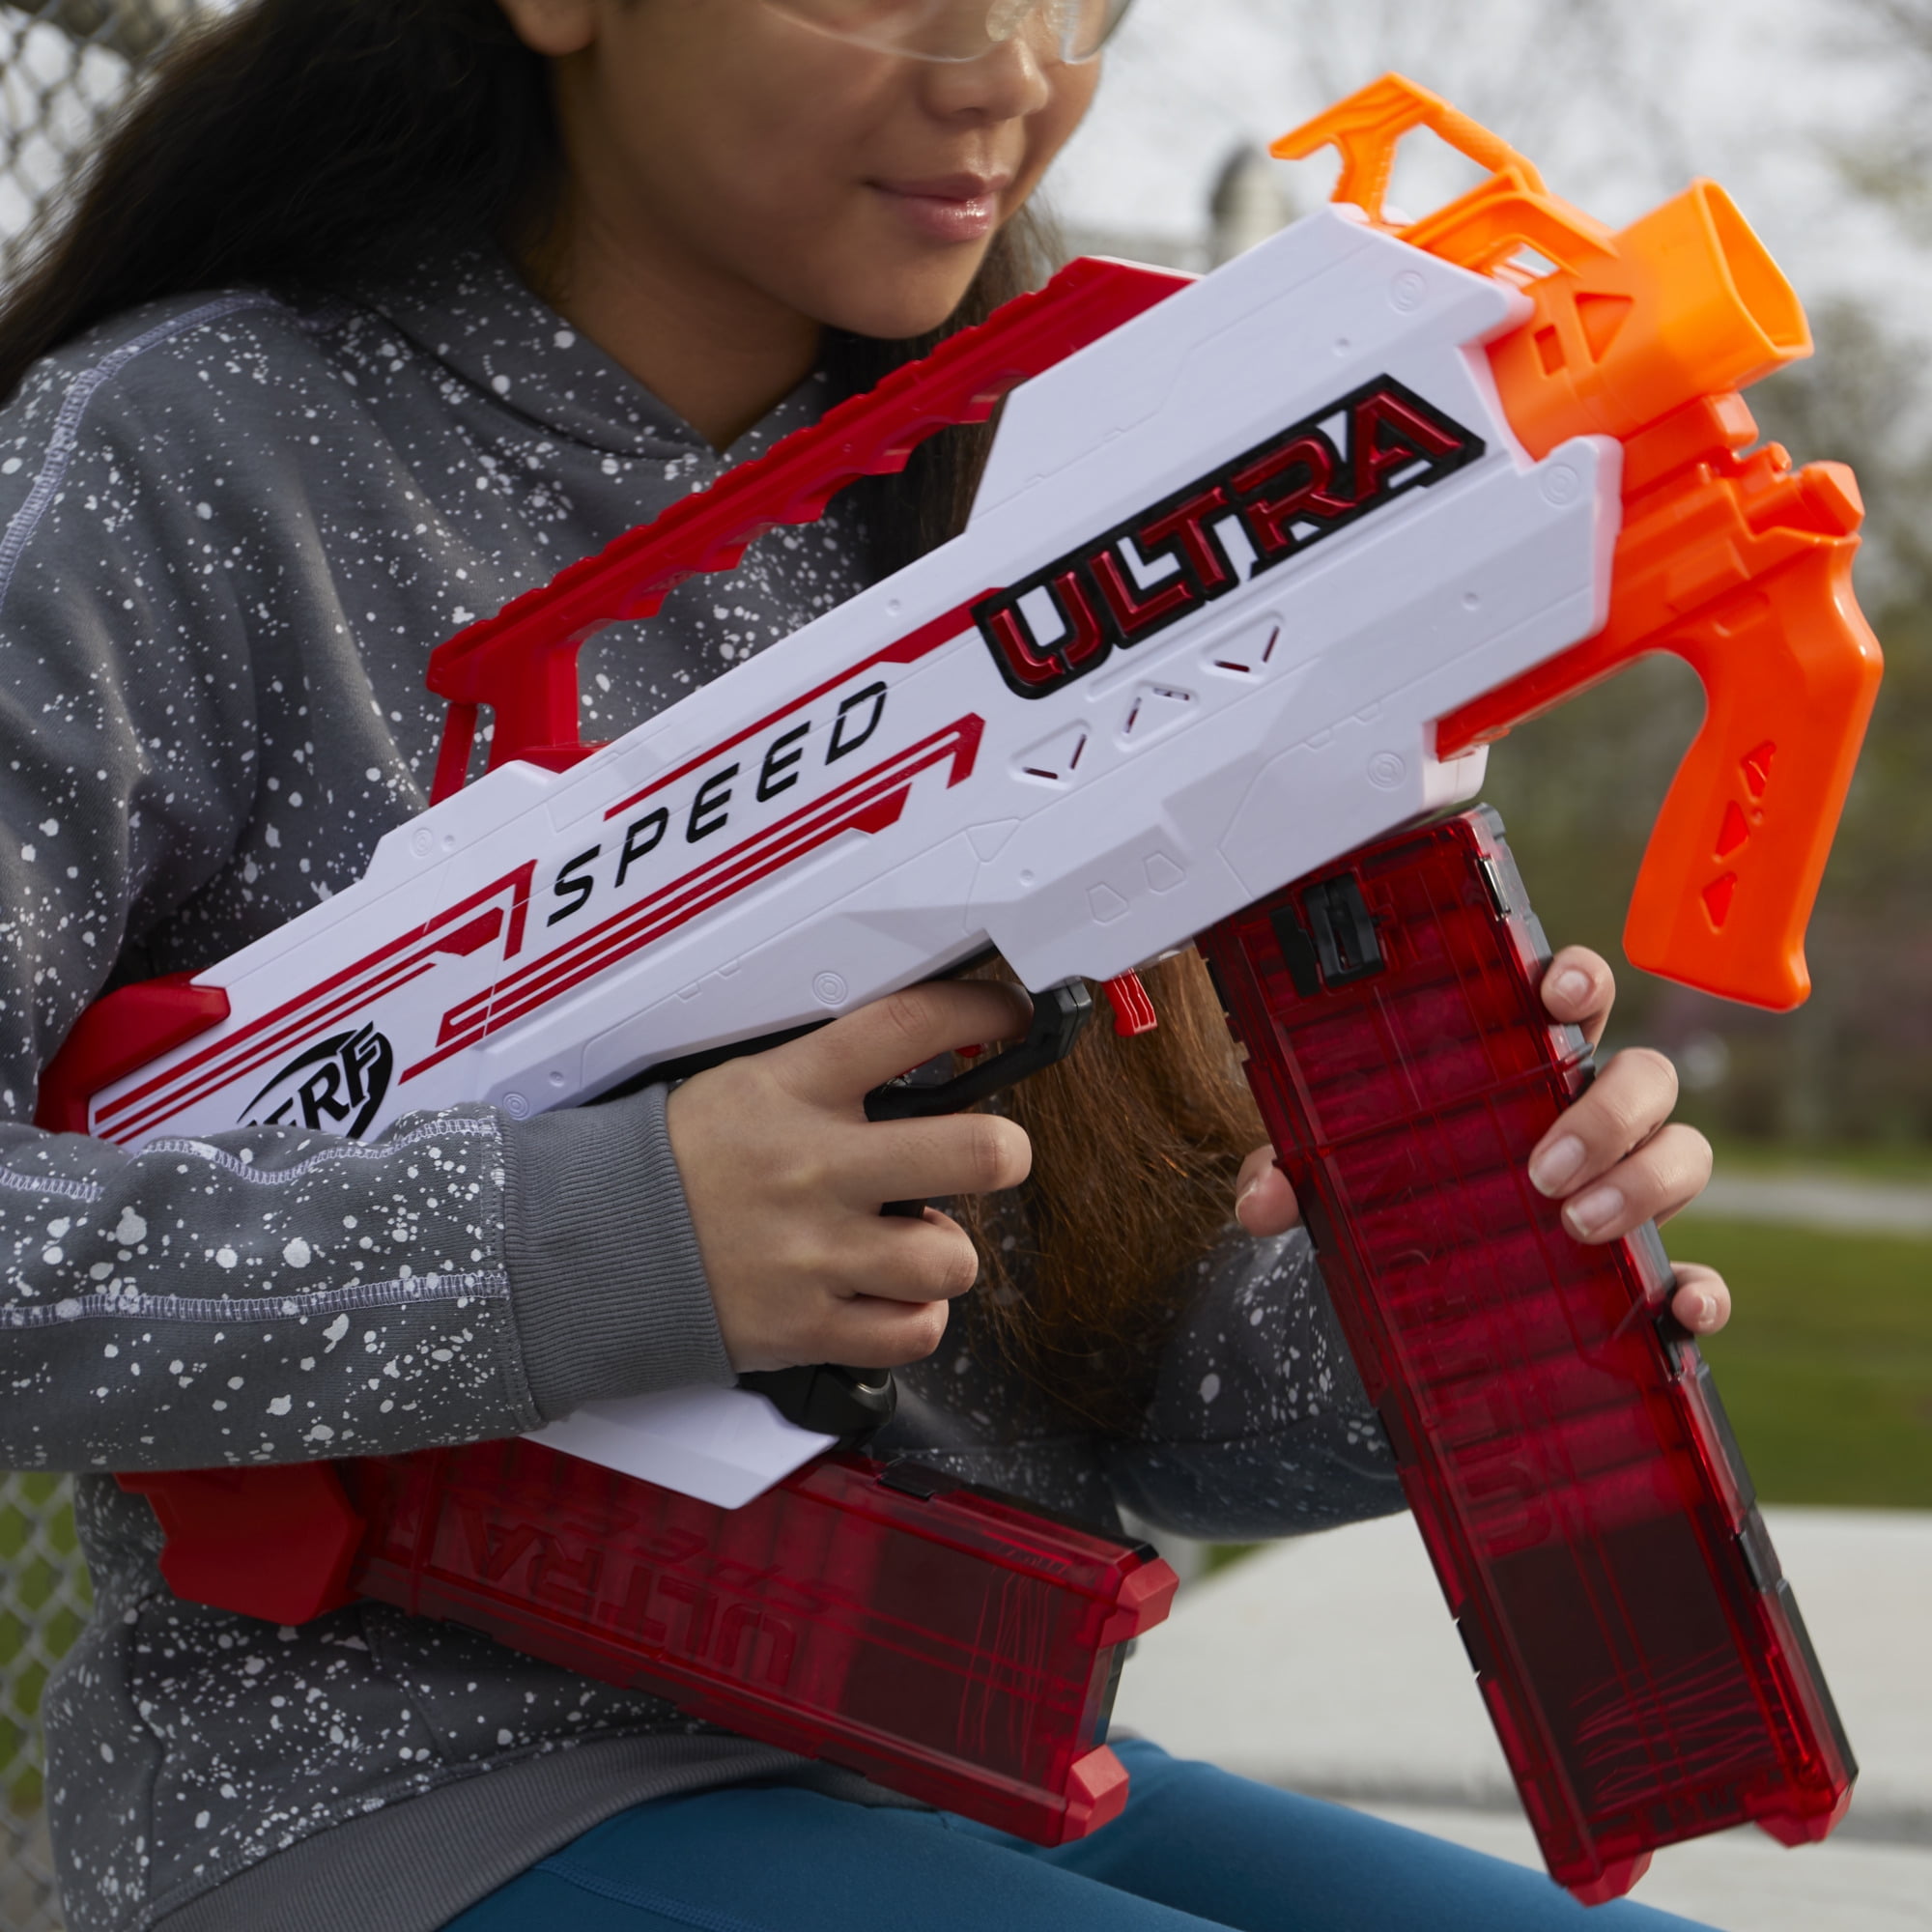 NERF F4929 Ultra Speed Motorized Dart Gun Blaster - Orange/Red/White for  sale online